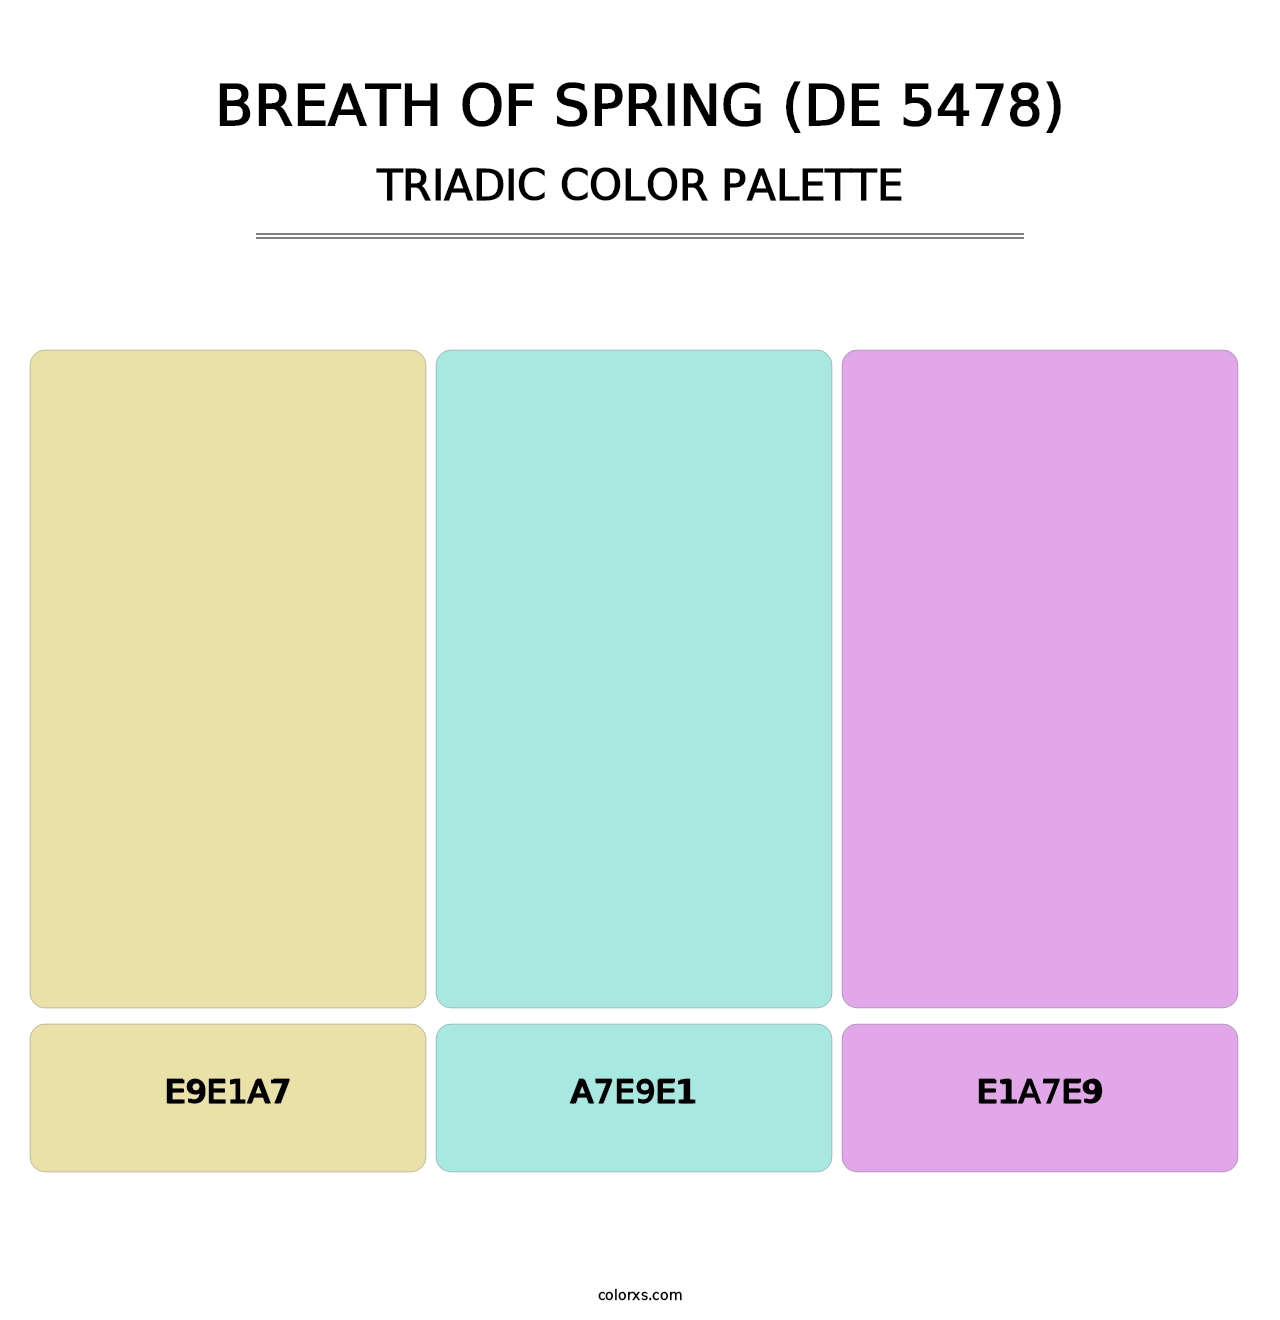 Breath of Spring (DE 5478) - Triadic Color Palette